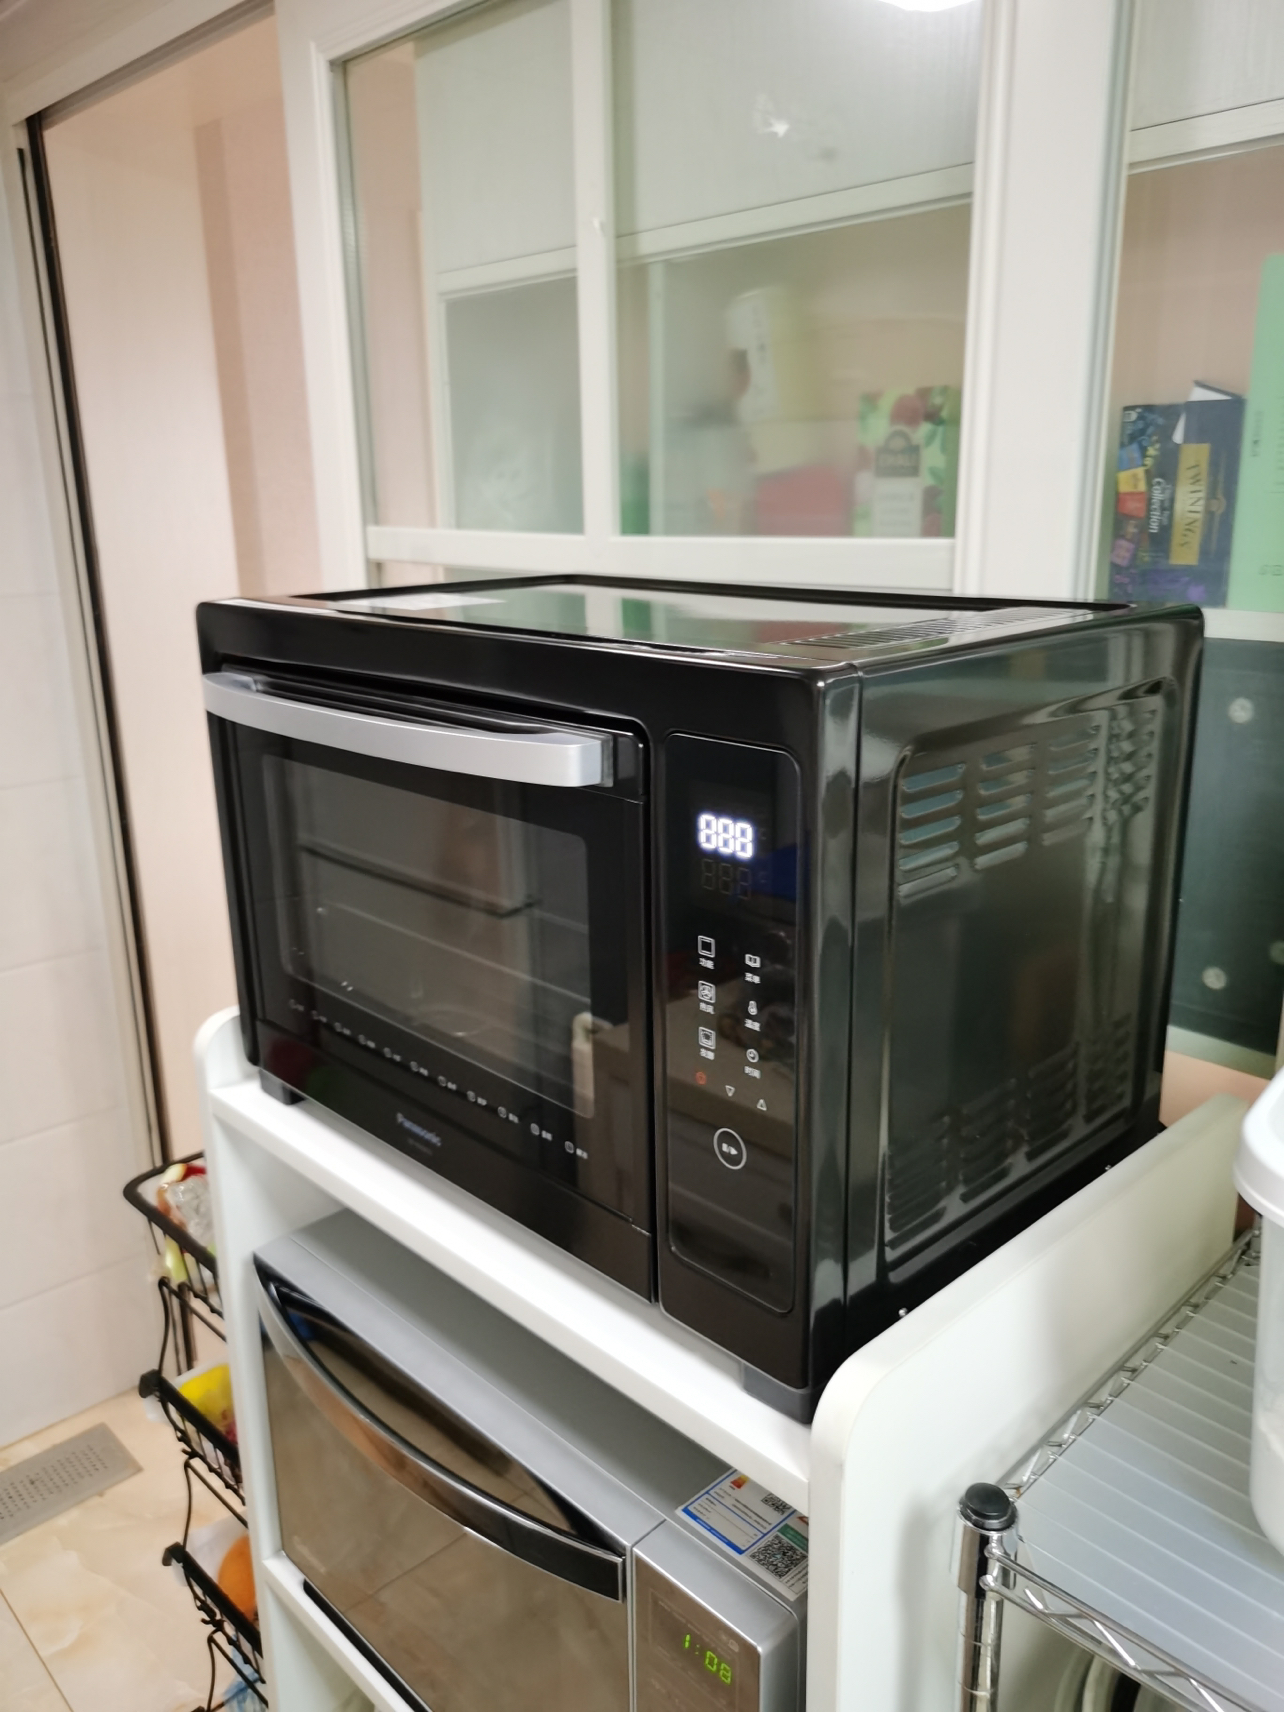 松下(Panasonic) 家用多功能电烤箱 大容量 电子温控 上下独立温控 自动预热 38L容量 NB-HM3810晒单图